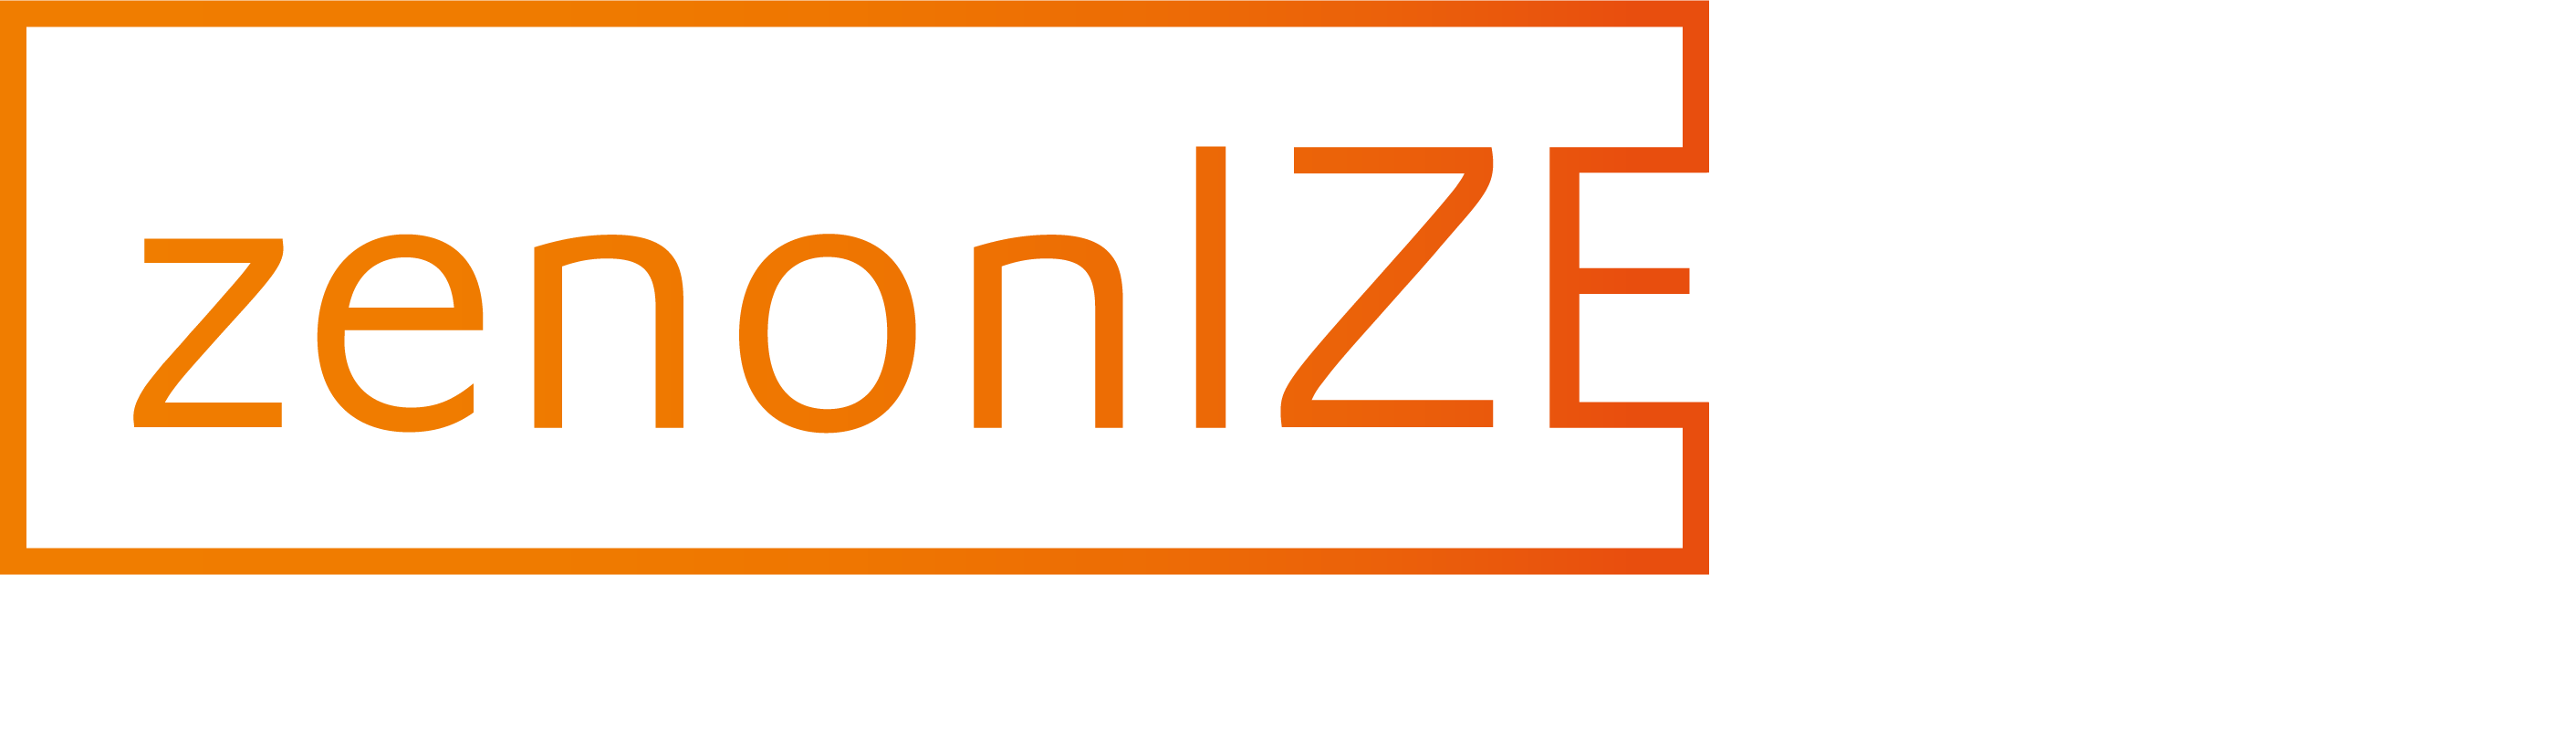 zenonize_23_Logo_Claim_4C_white